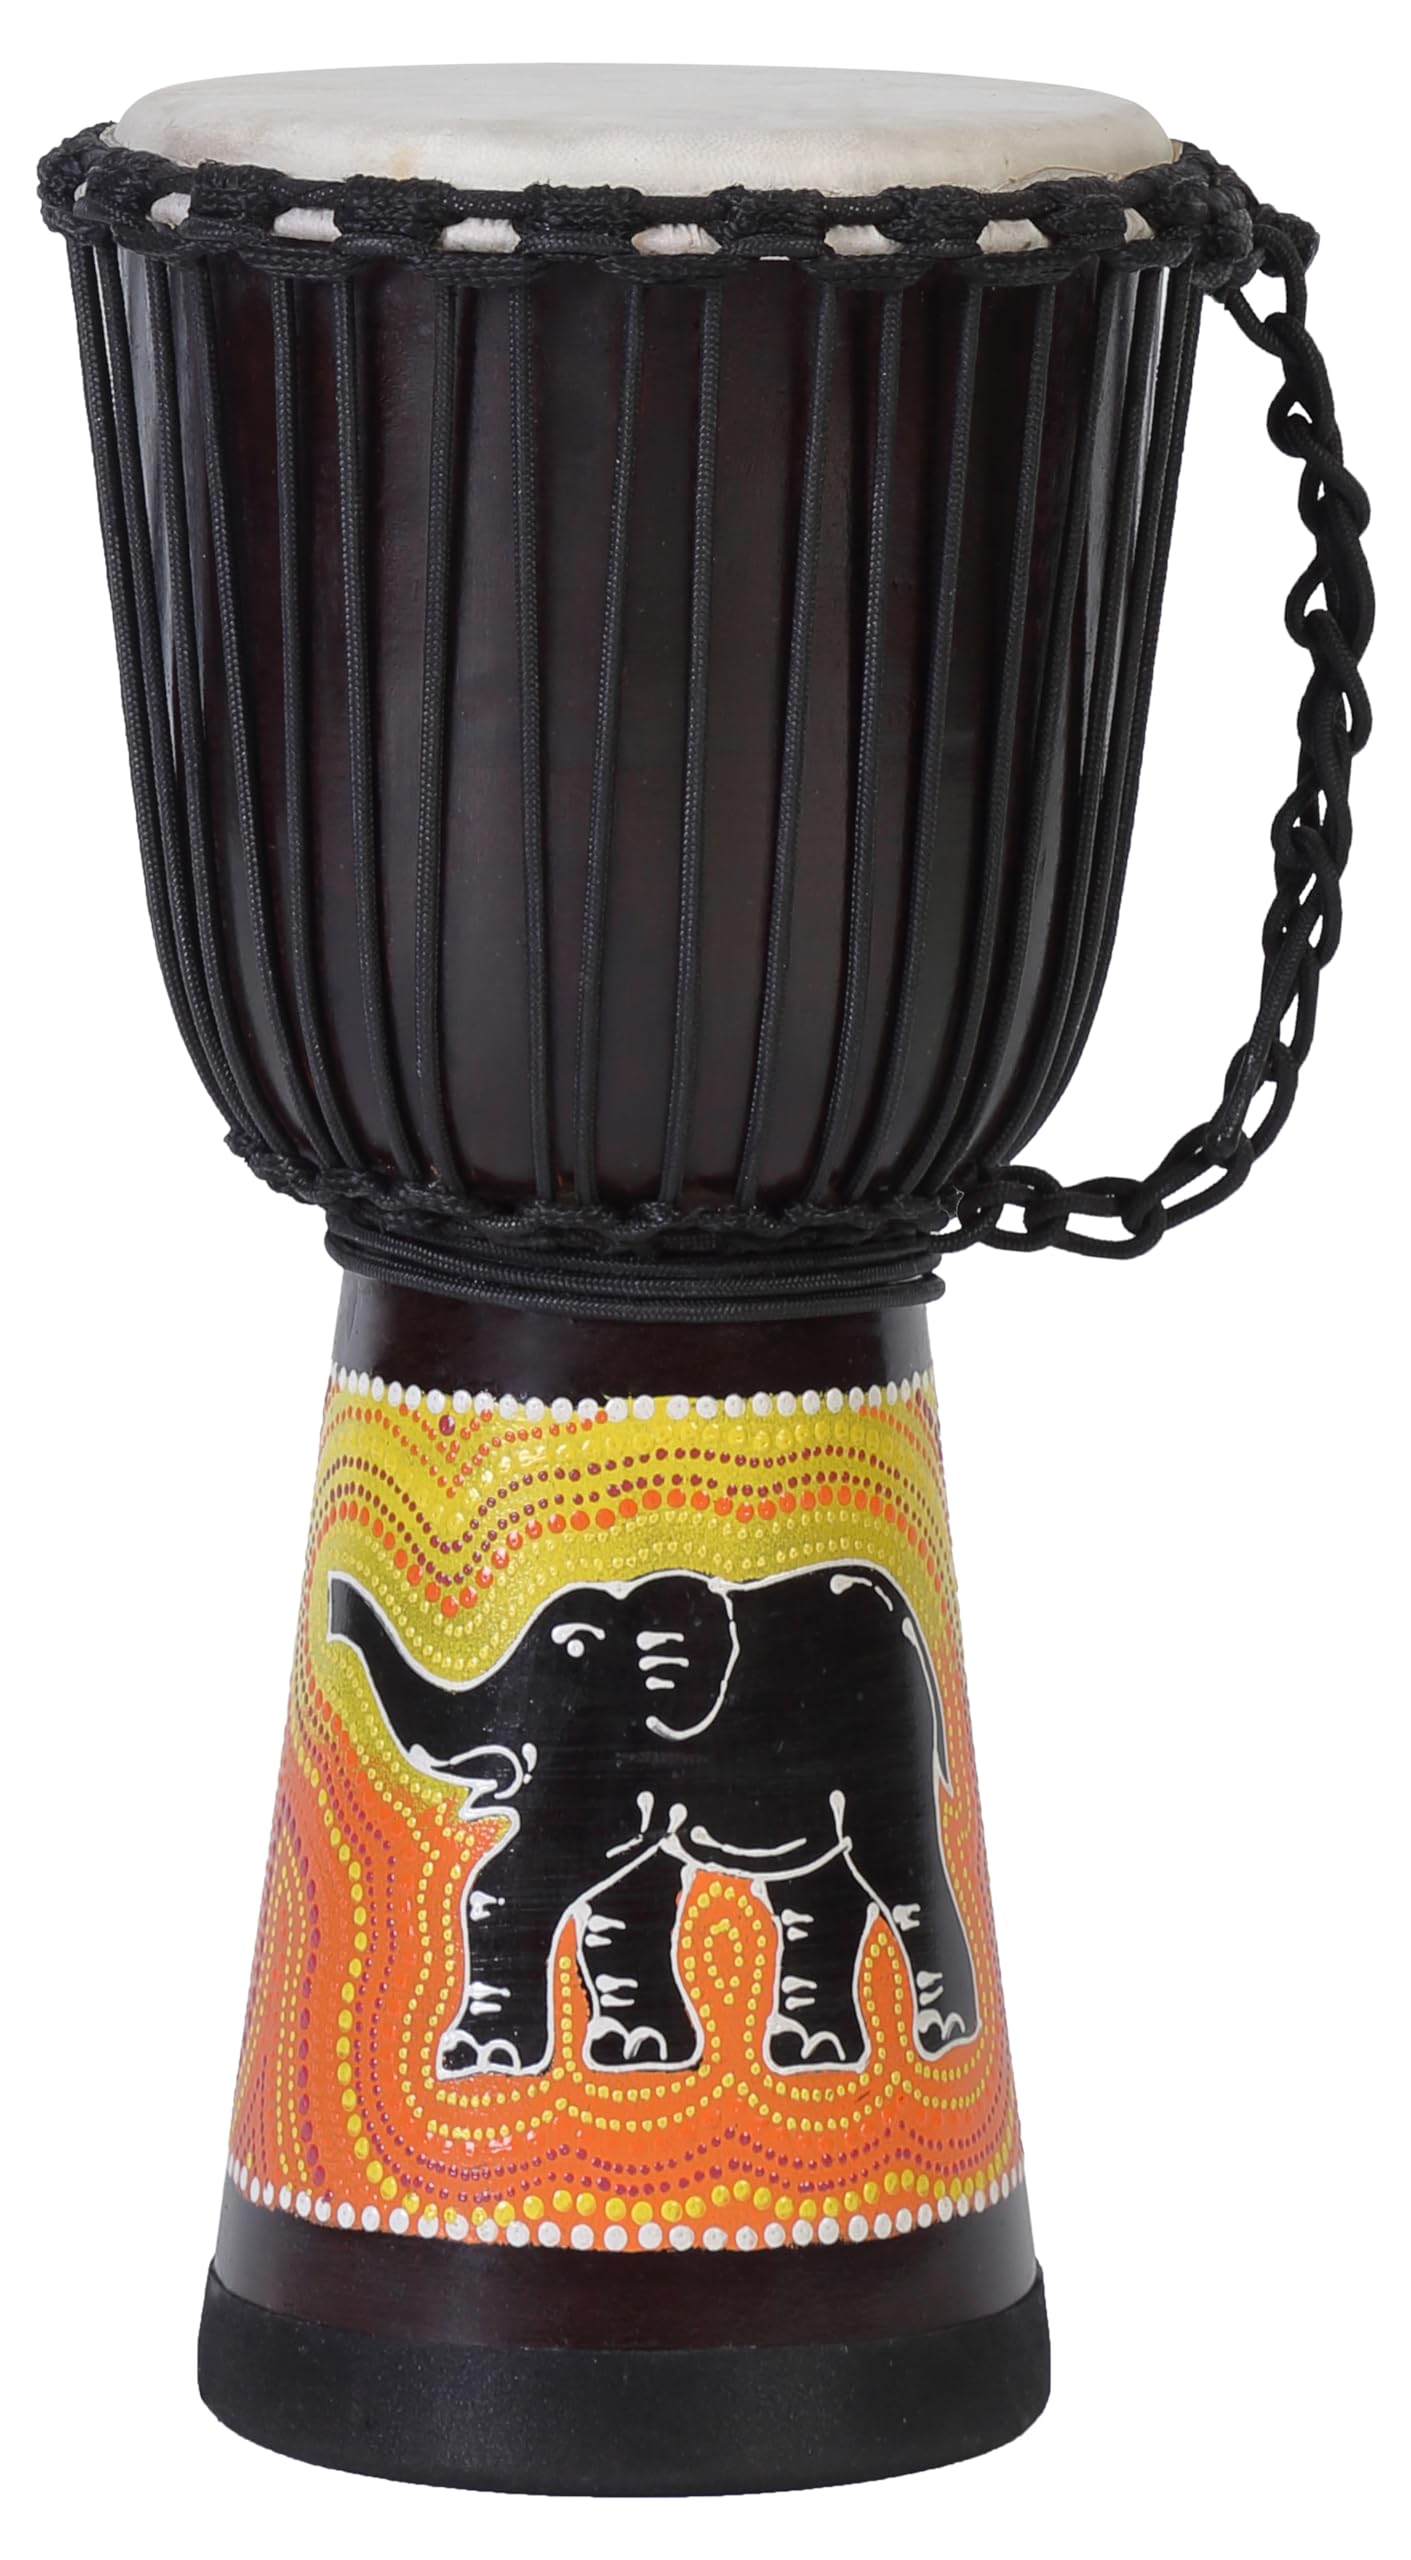 50cm Profi Djembe Trommel Bongo Drum Buschtrommel Percussion Motiv Elefant Afrika Art - (Sehr gutes Instrument für Damen und Jugendliche guter Bass)